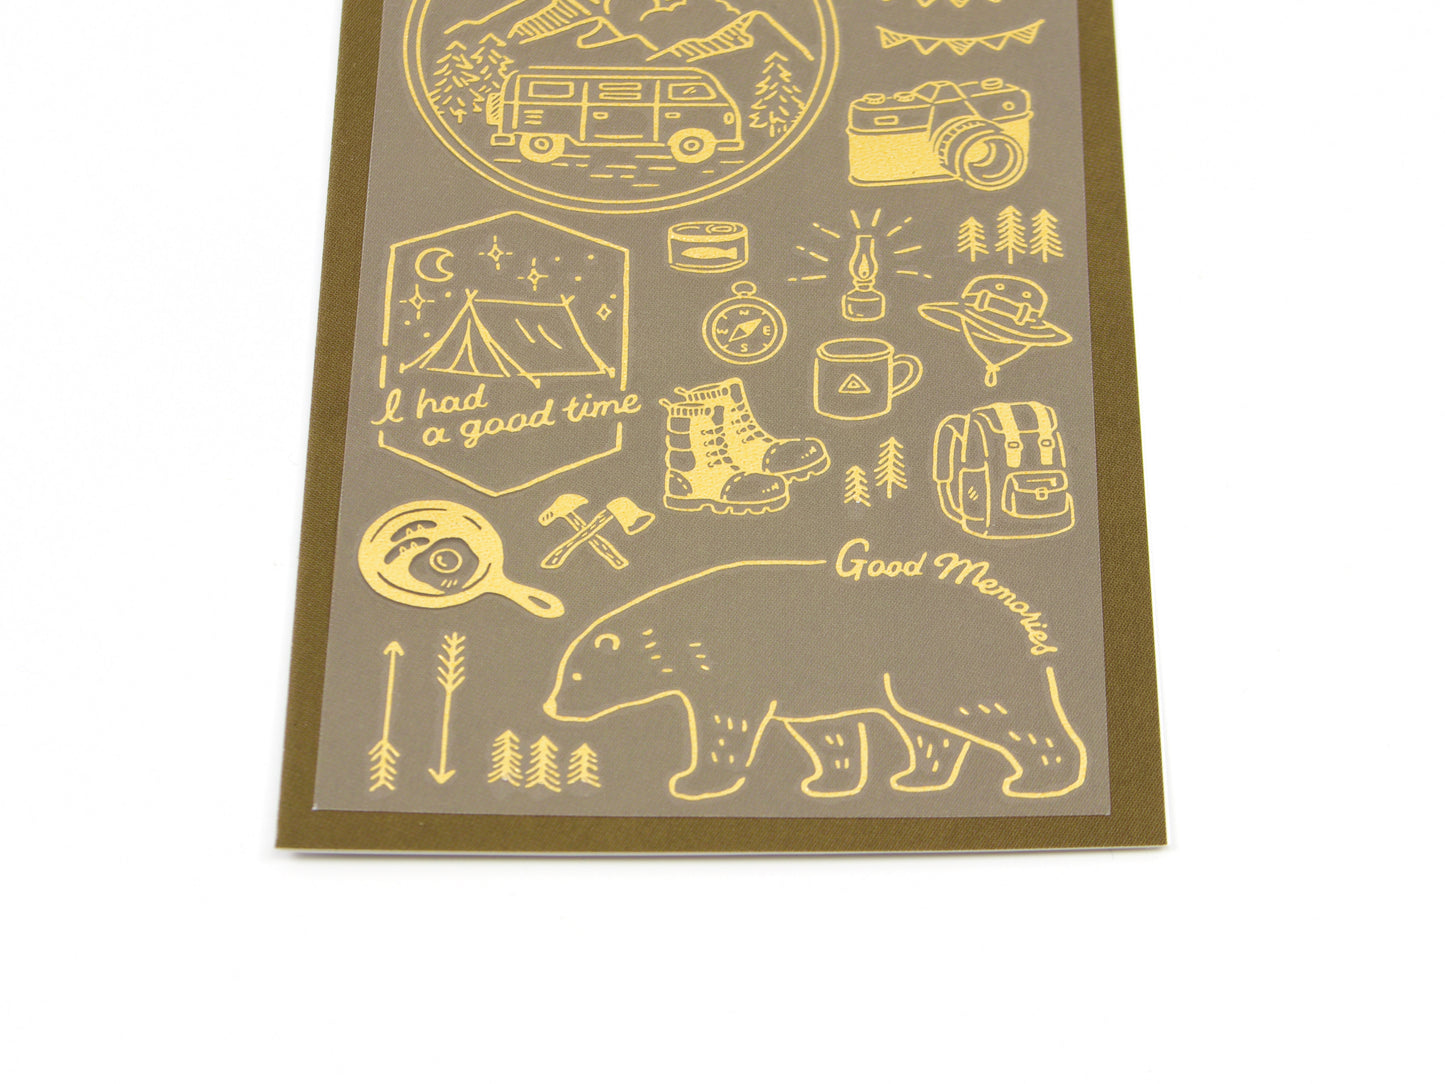 Midori Gold Foil Transfer Stickers